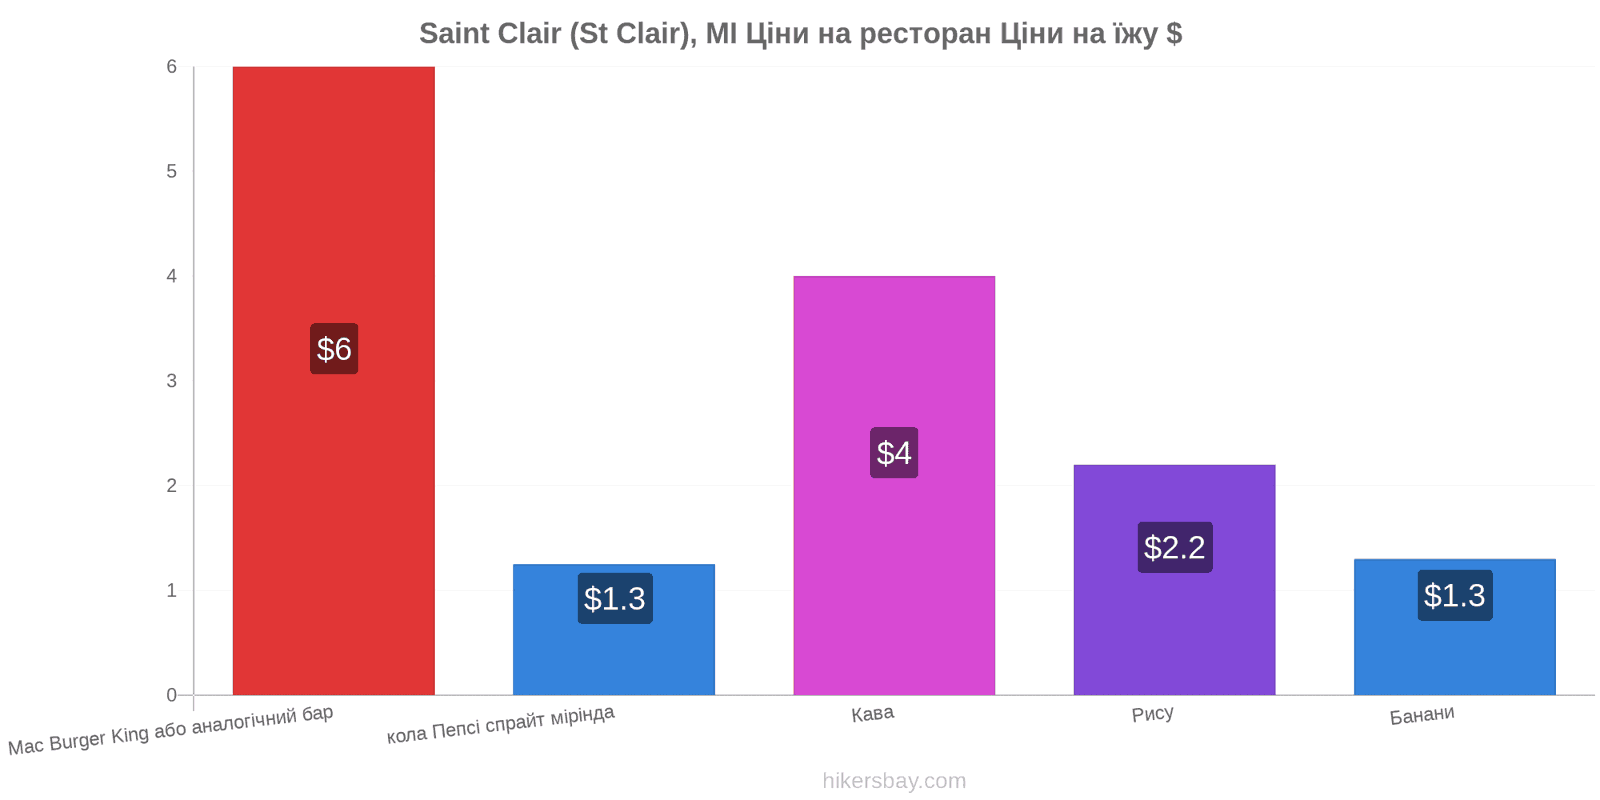 Saint Clair (St Clair), MI зміни цін hikersbay.com